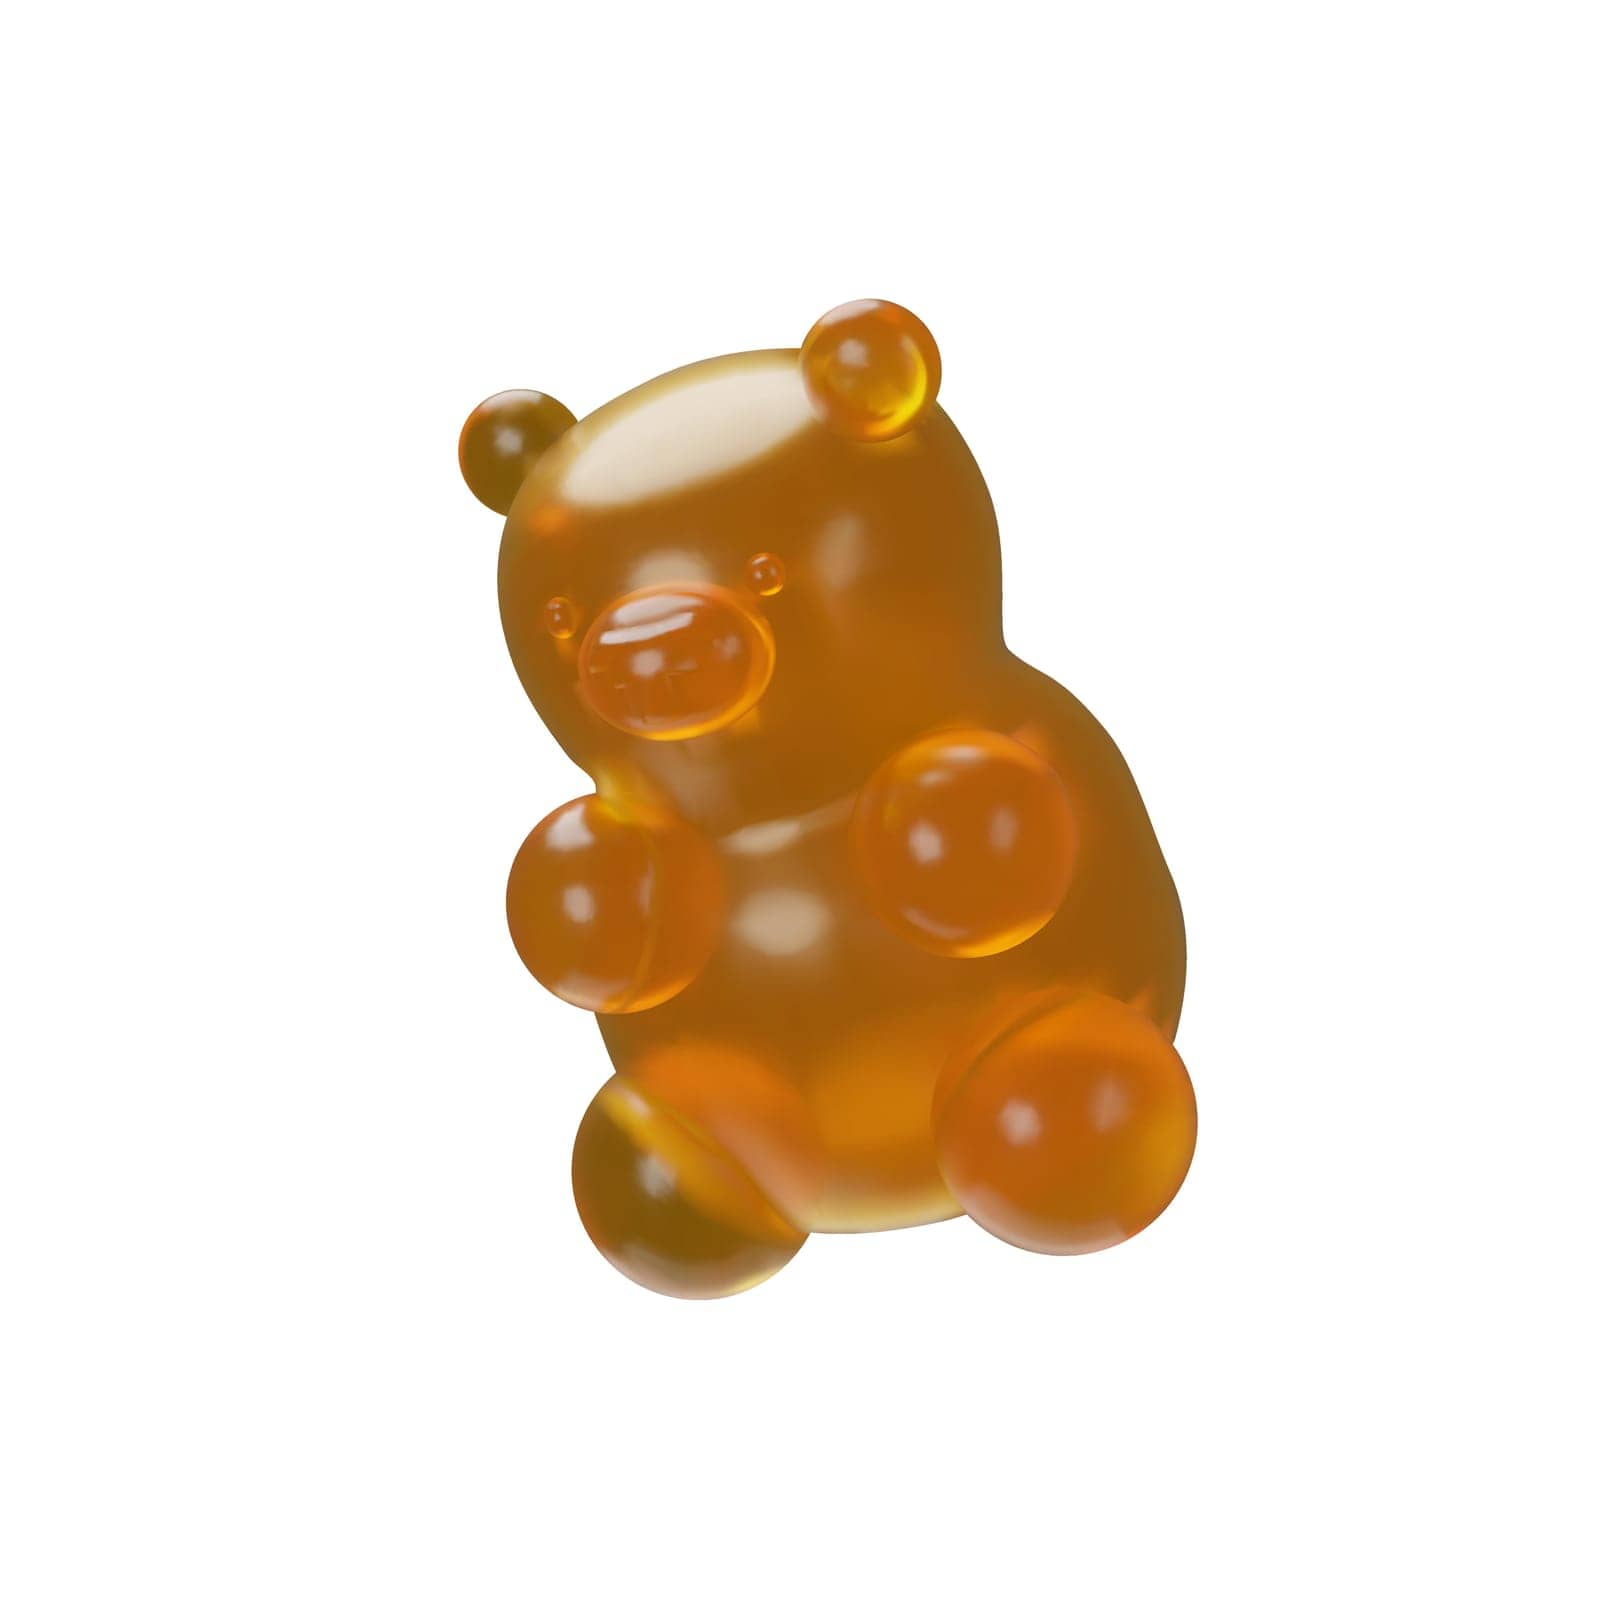 3D render chewy gummy bear by DaDariy